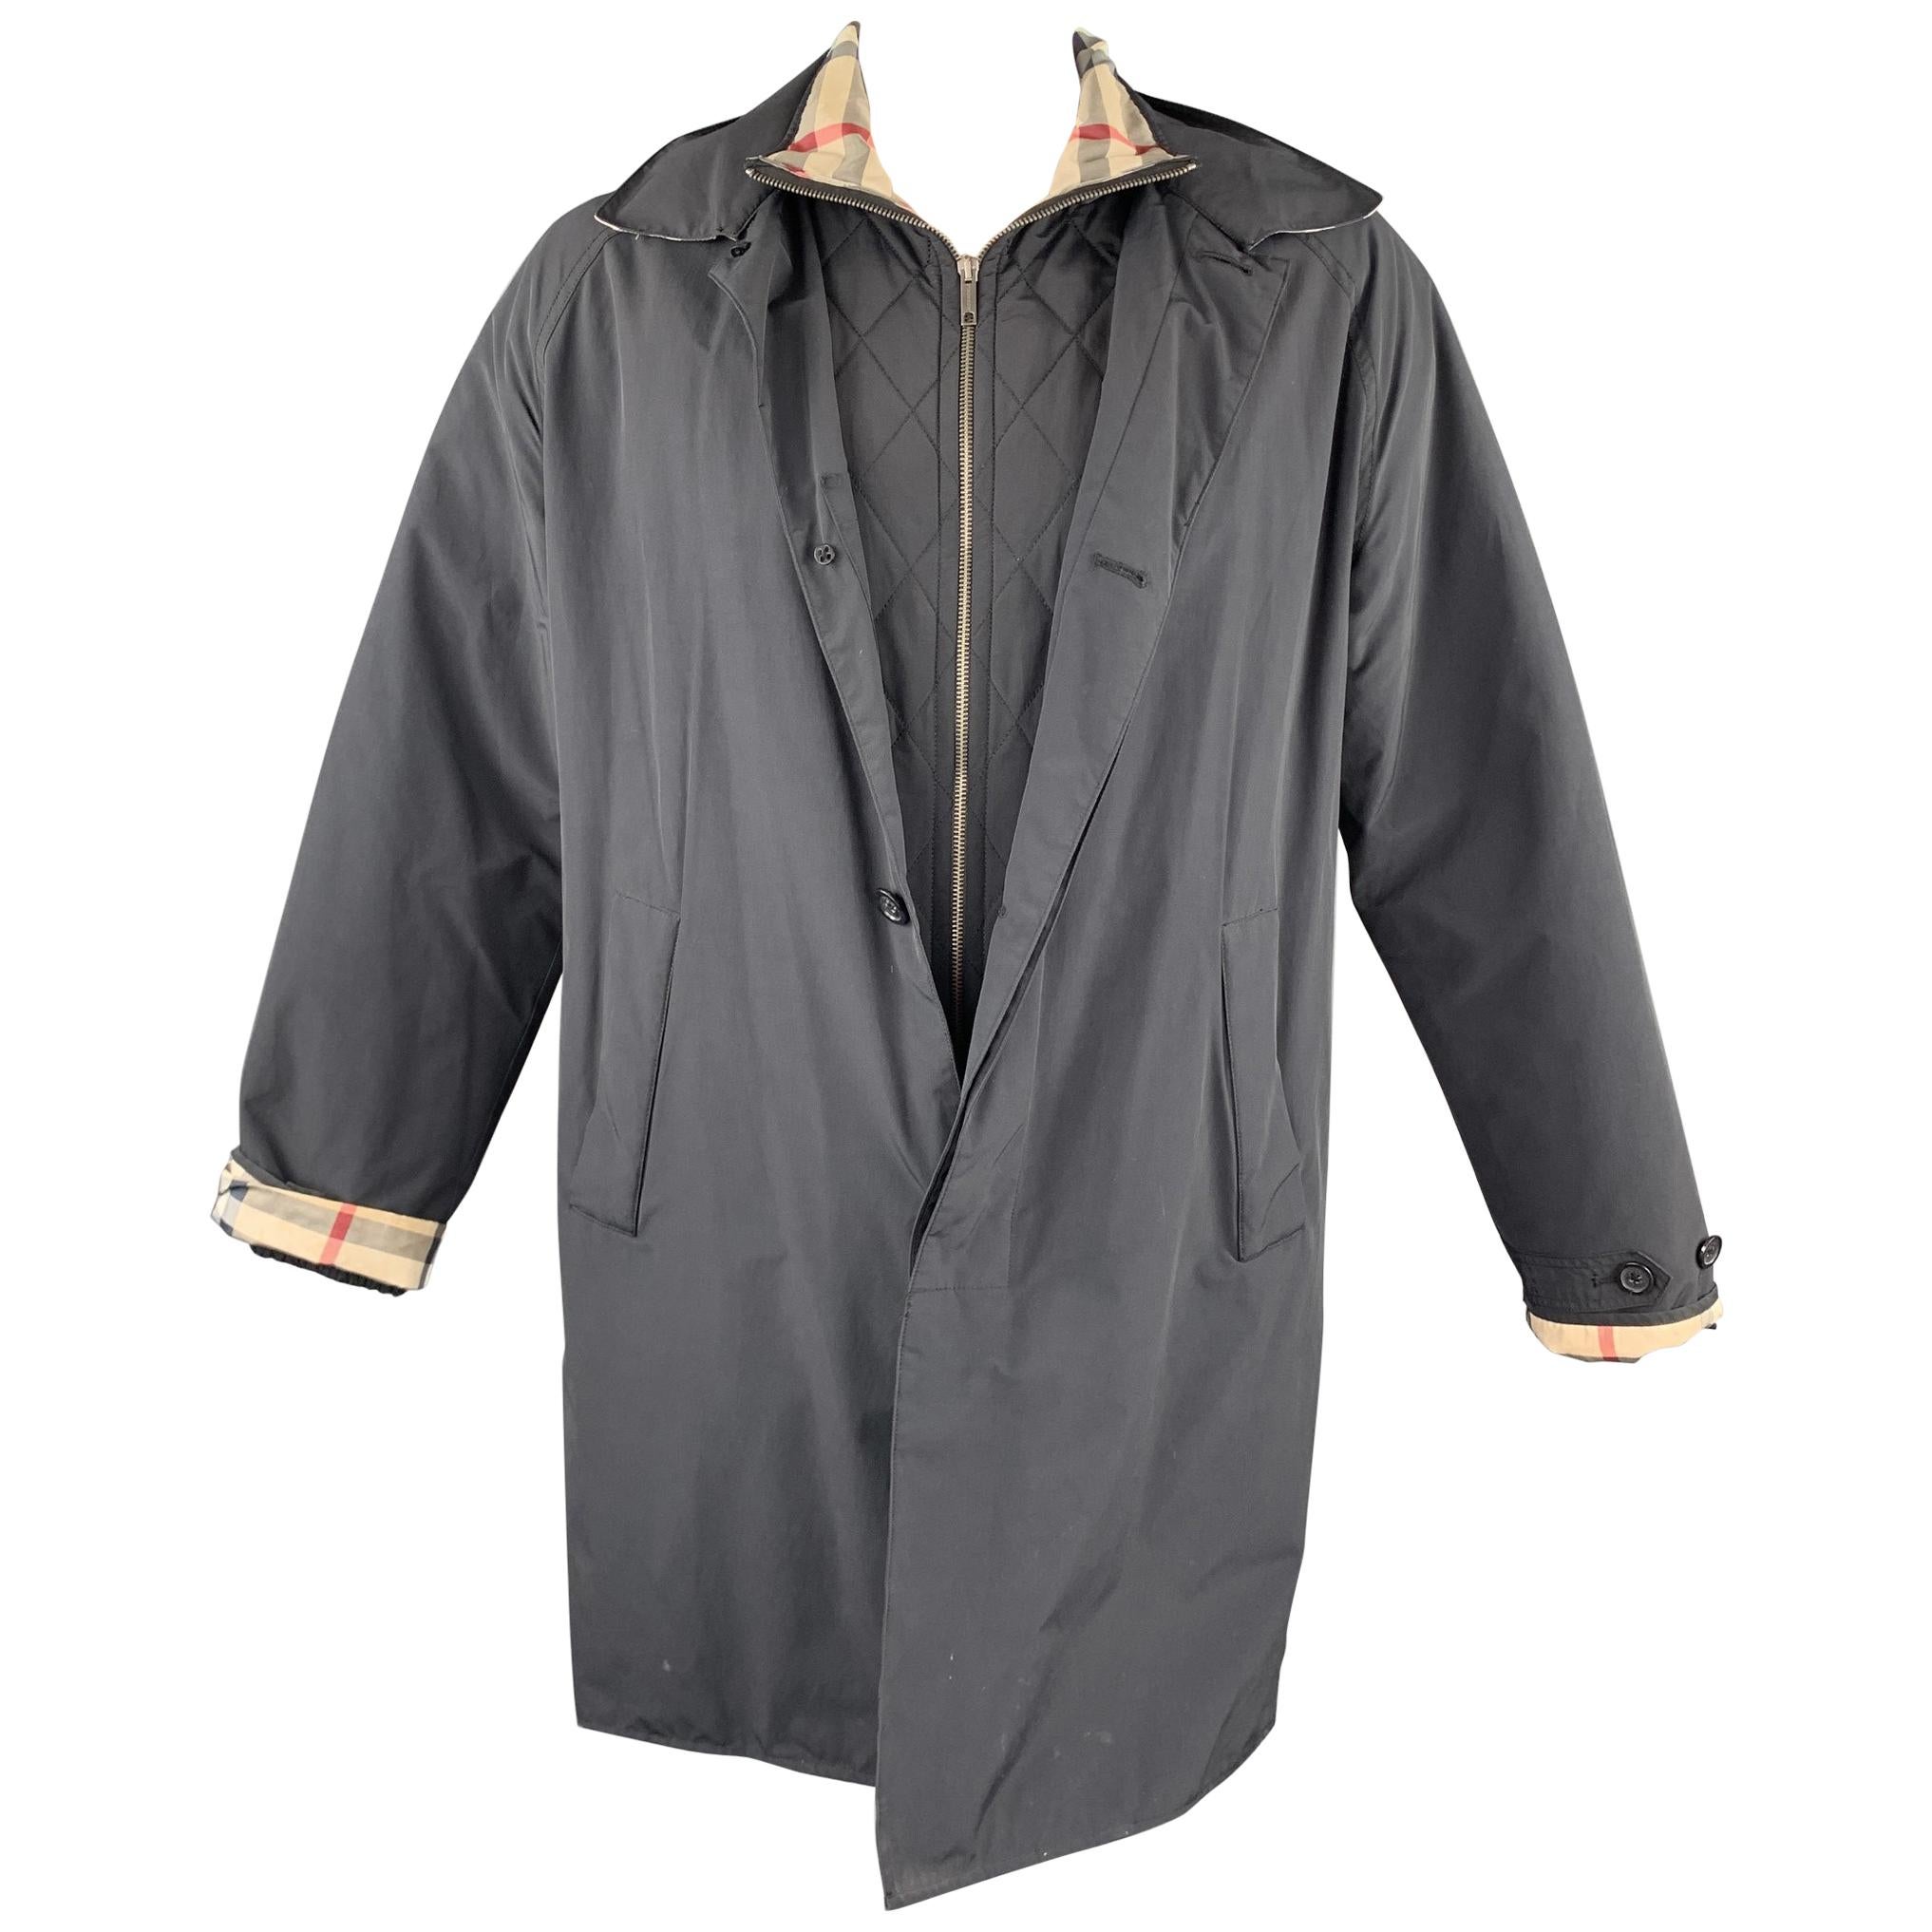 BURBERRY LONDON Size M Navy Nylon / Cotton Zip & Buttons Detachable Jacket Coat